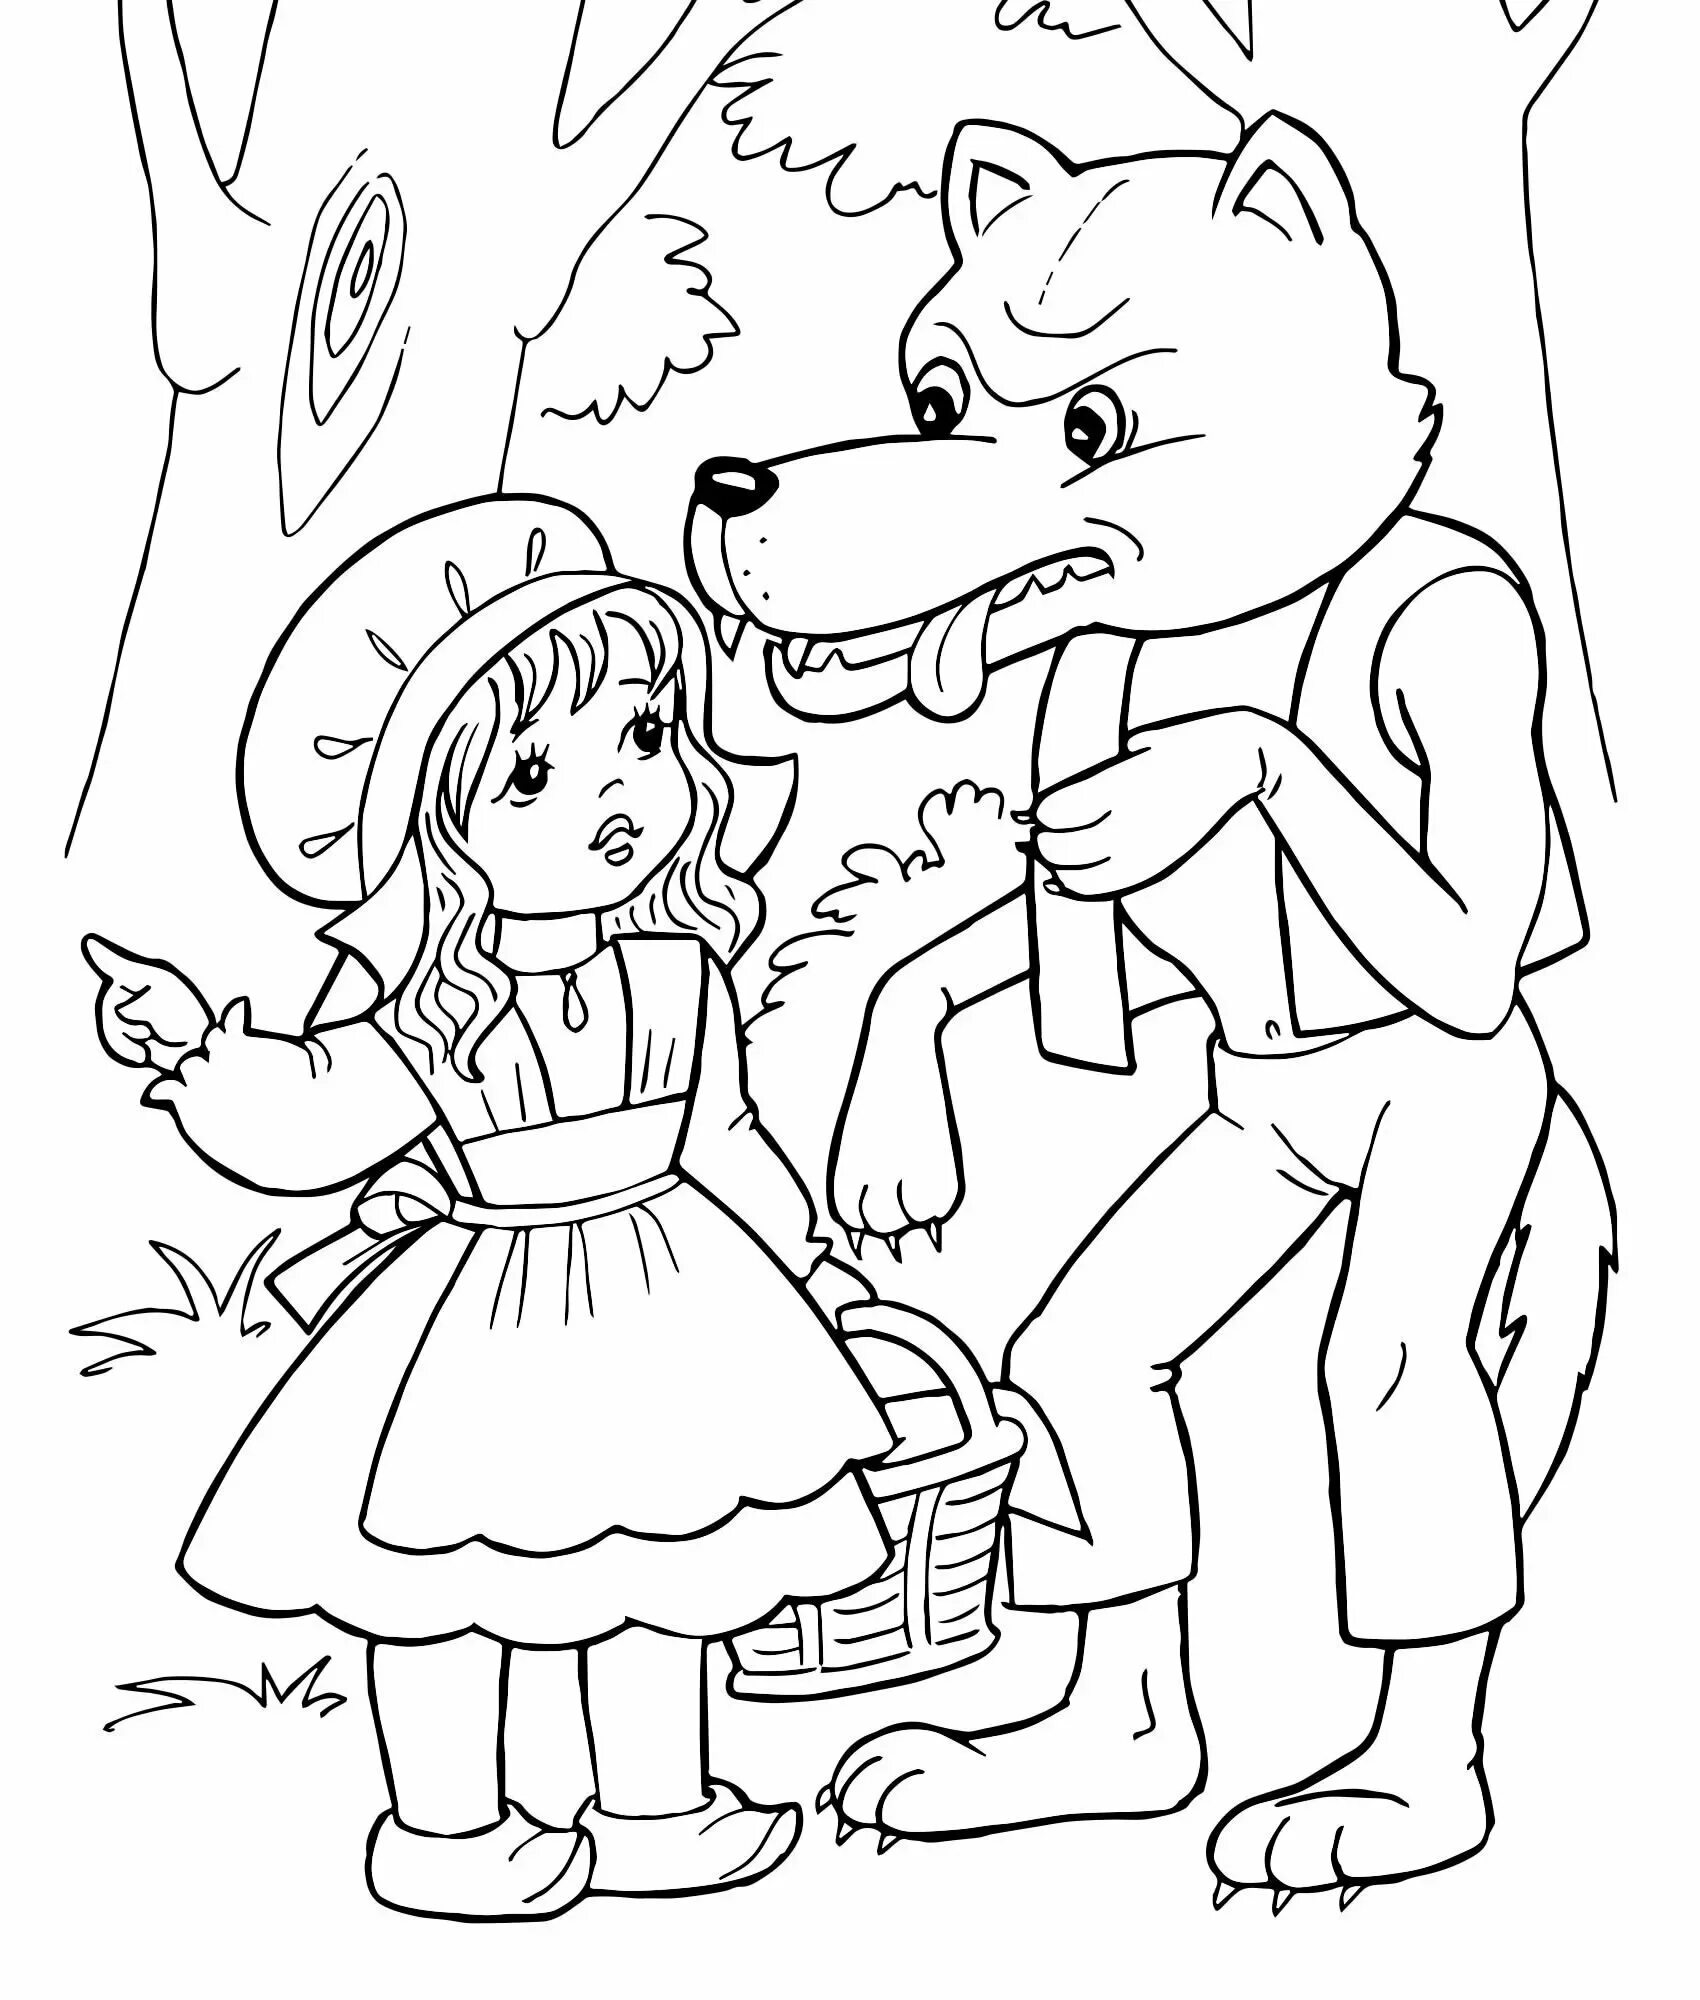 Волк из сказки красная шапочка разукрашка для детей. Картинки из сказок раскраски